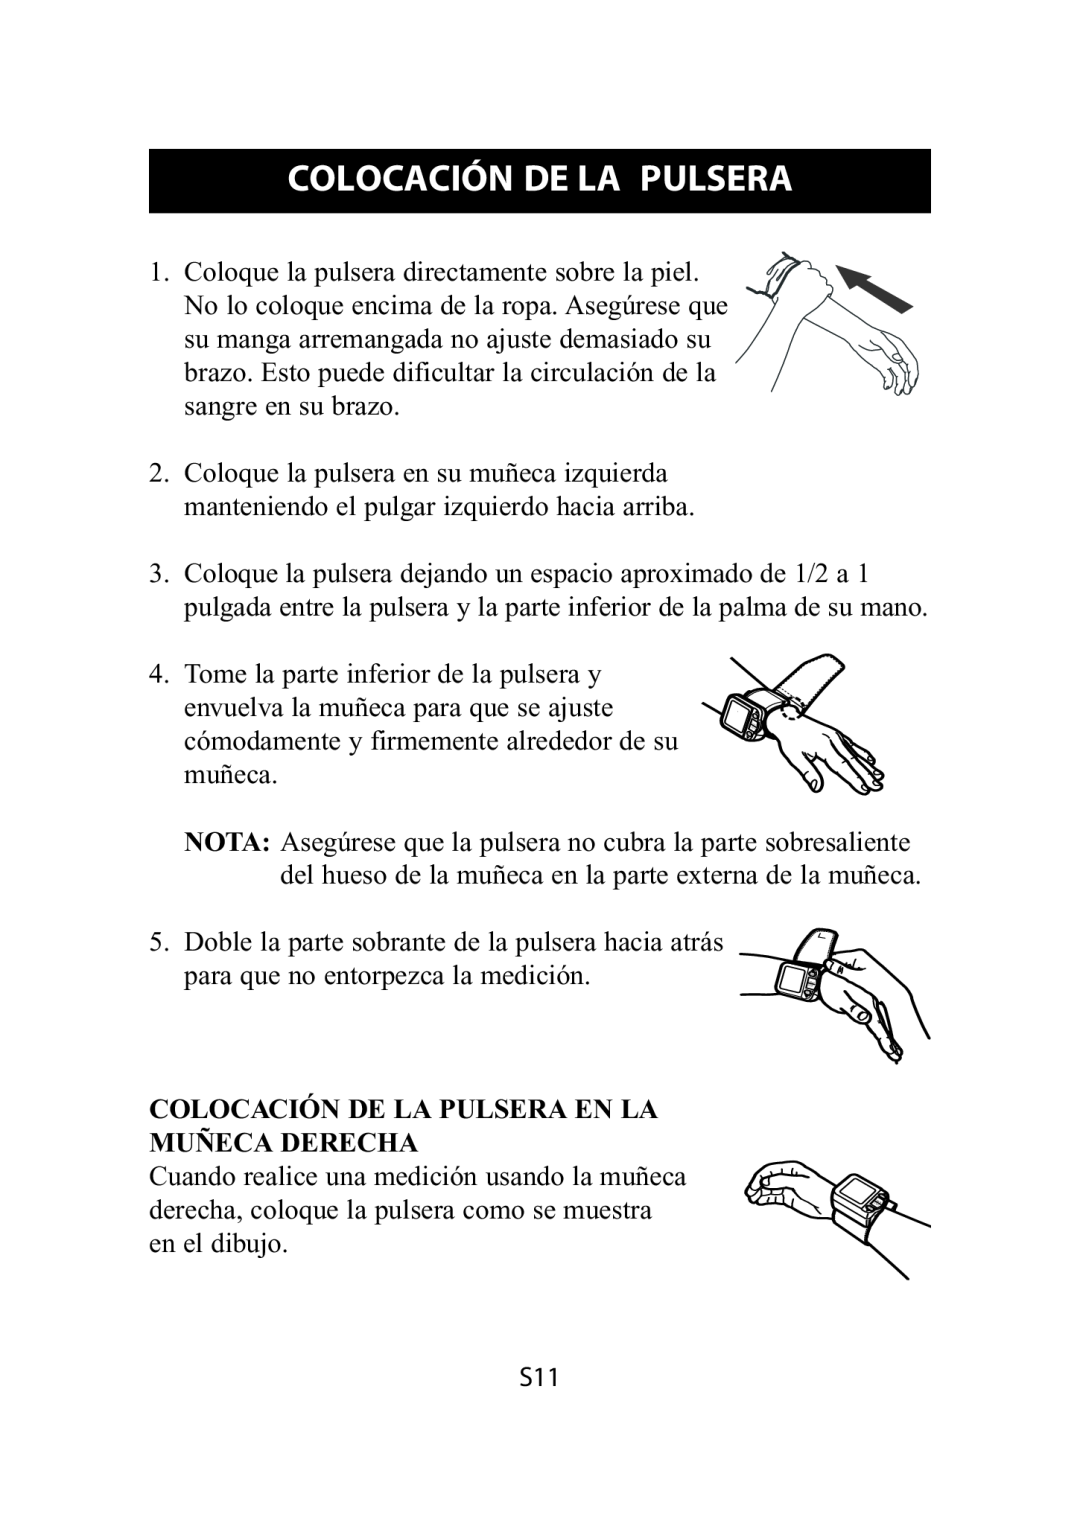 Omron Healthcare HEM-609 instruction manual Colocación De La Pulsera En La Muñeca Derecha 